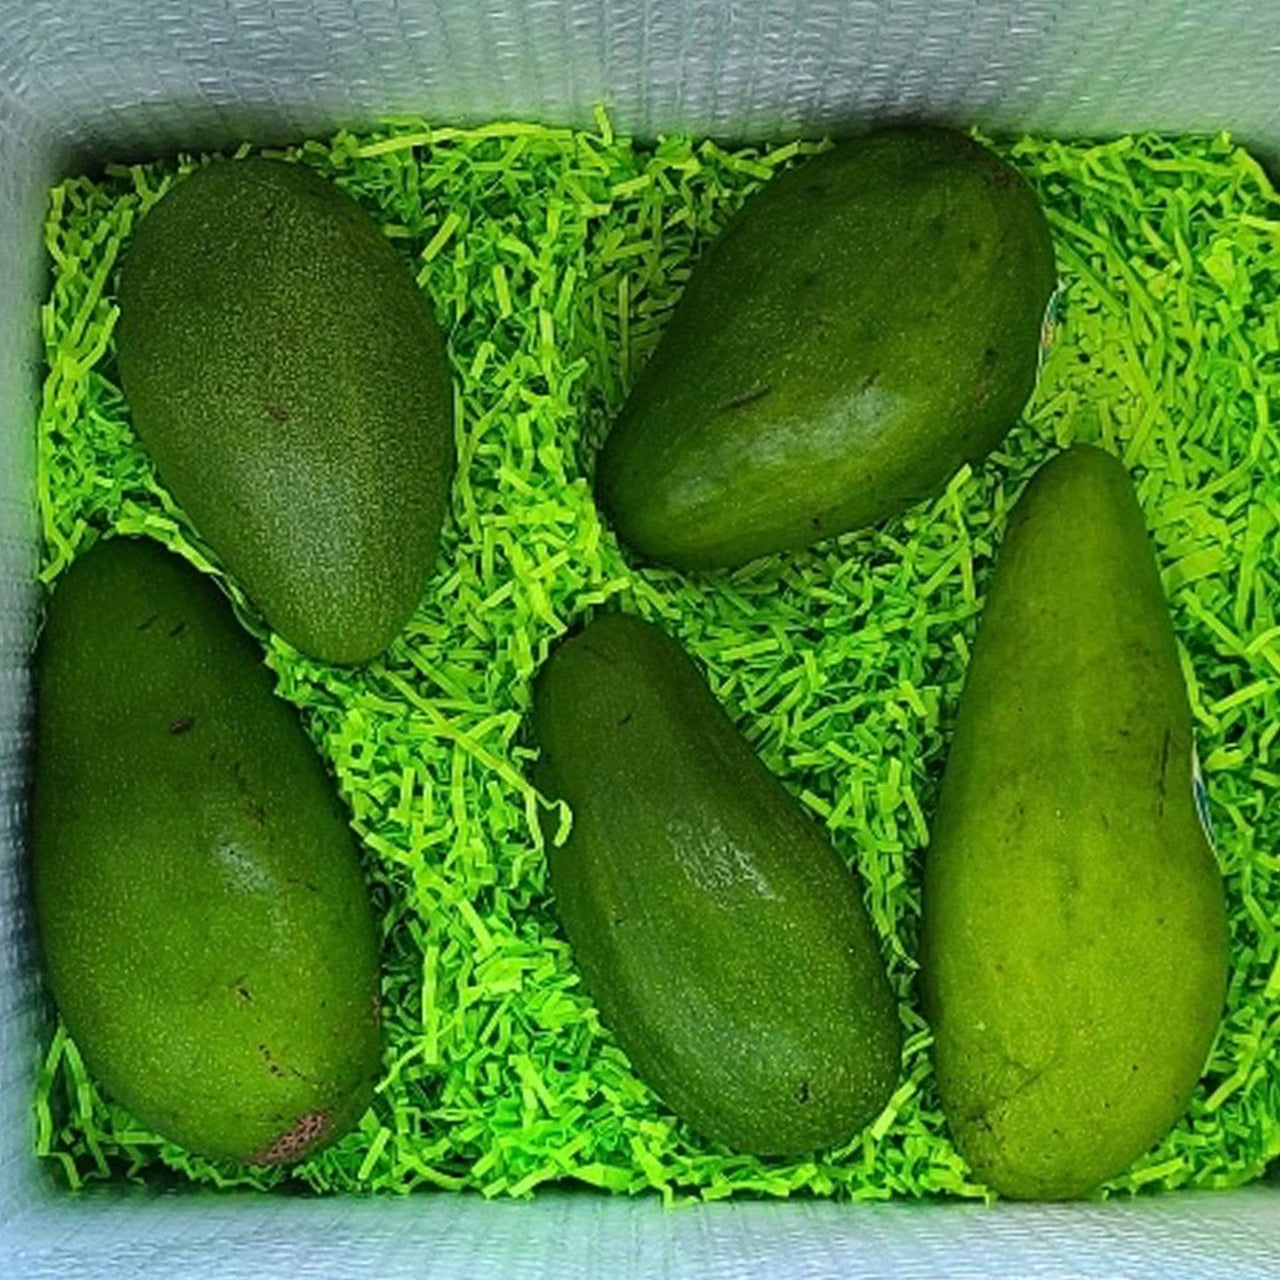 Tropical Avocado Tasting Box